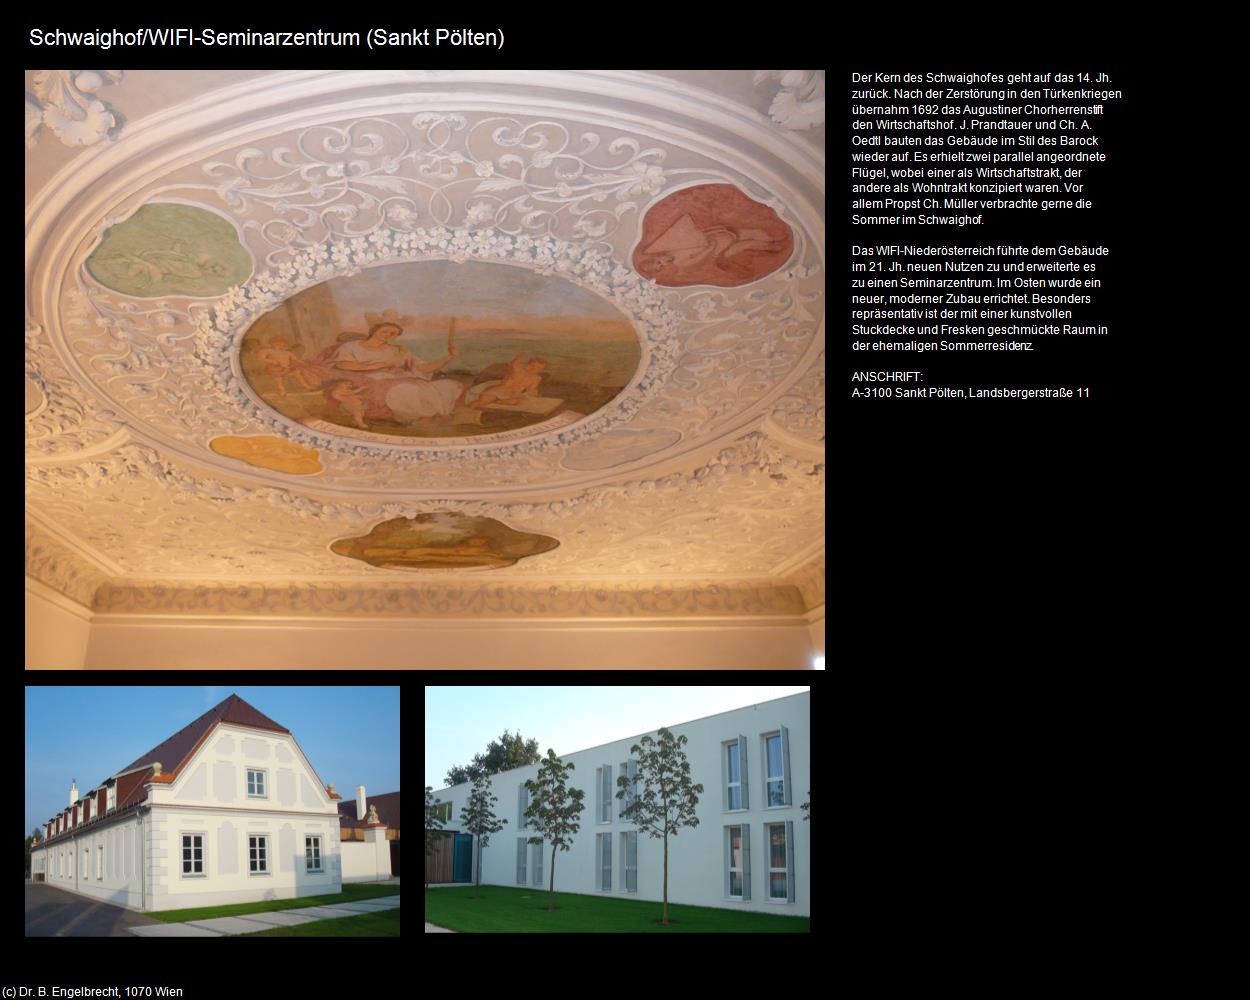 Schwaighof/WIFI-Seminarzentrum (Sankt Pölten) in Kulturatlas-NIEDERÖSTERREICH